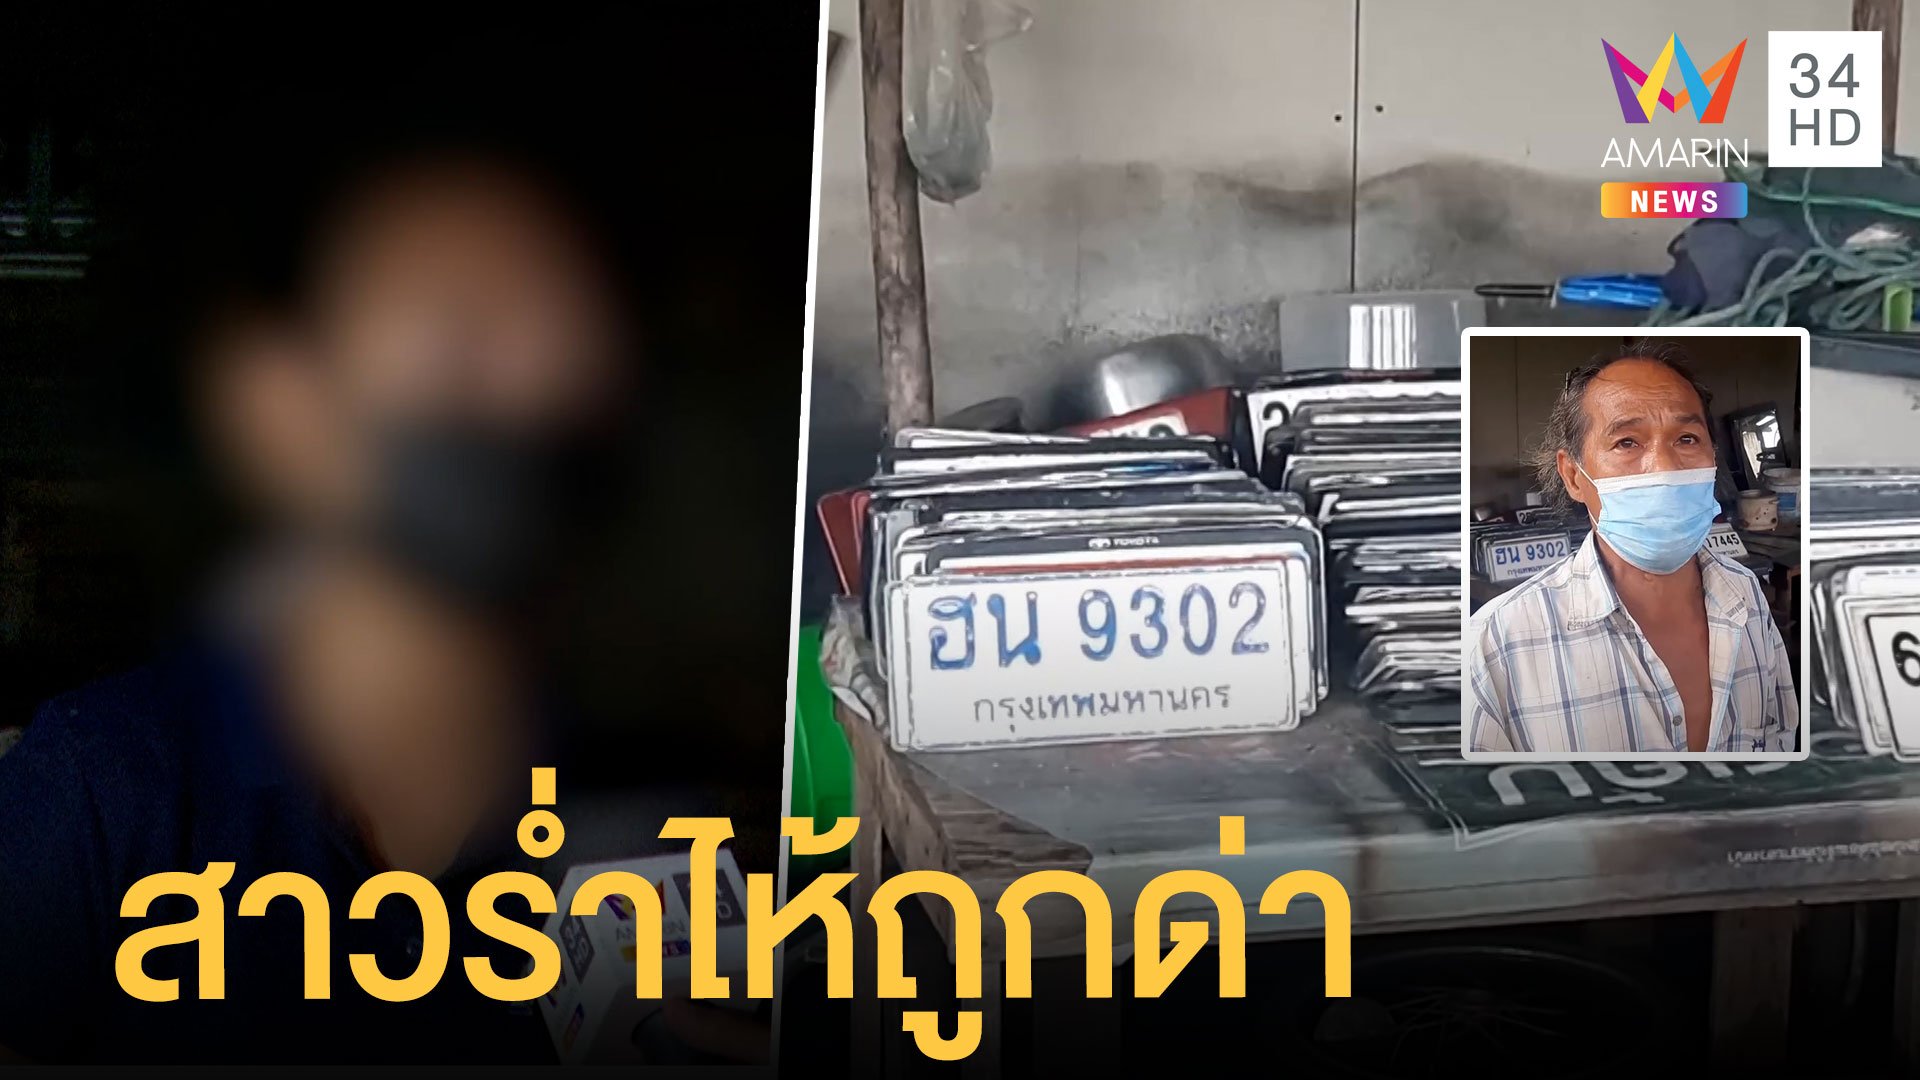 สาวร่ำไห้ถูกโจมตีหนัก ติงลุงเก็บป้ายทะเบียนเรียกเงิน 100 | ข่าวเที่ยงอมรินทร์ | 16 ก.ย. 64 | AMARIN TVHD34